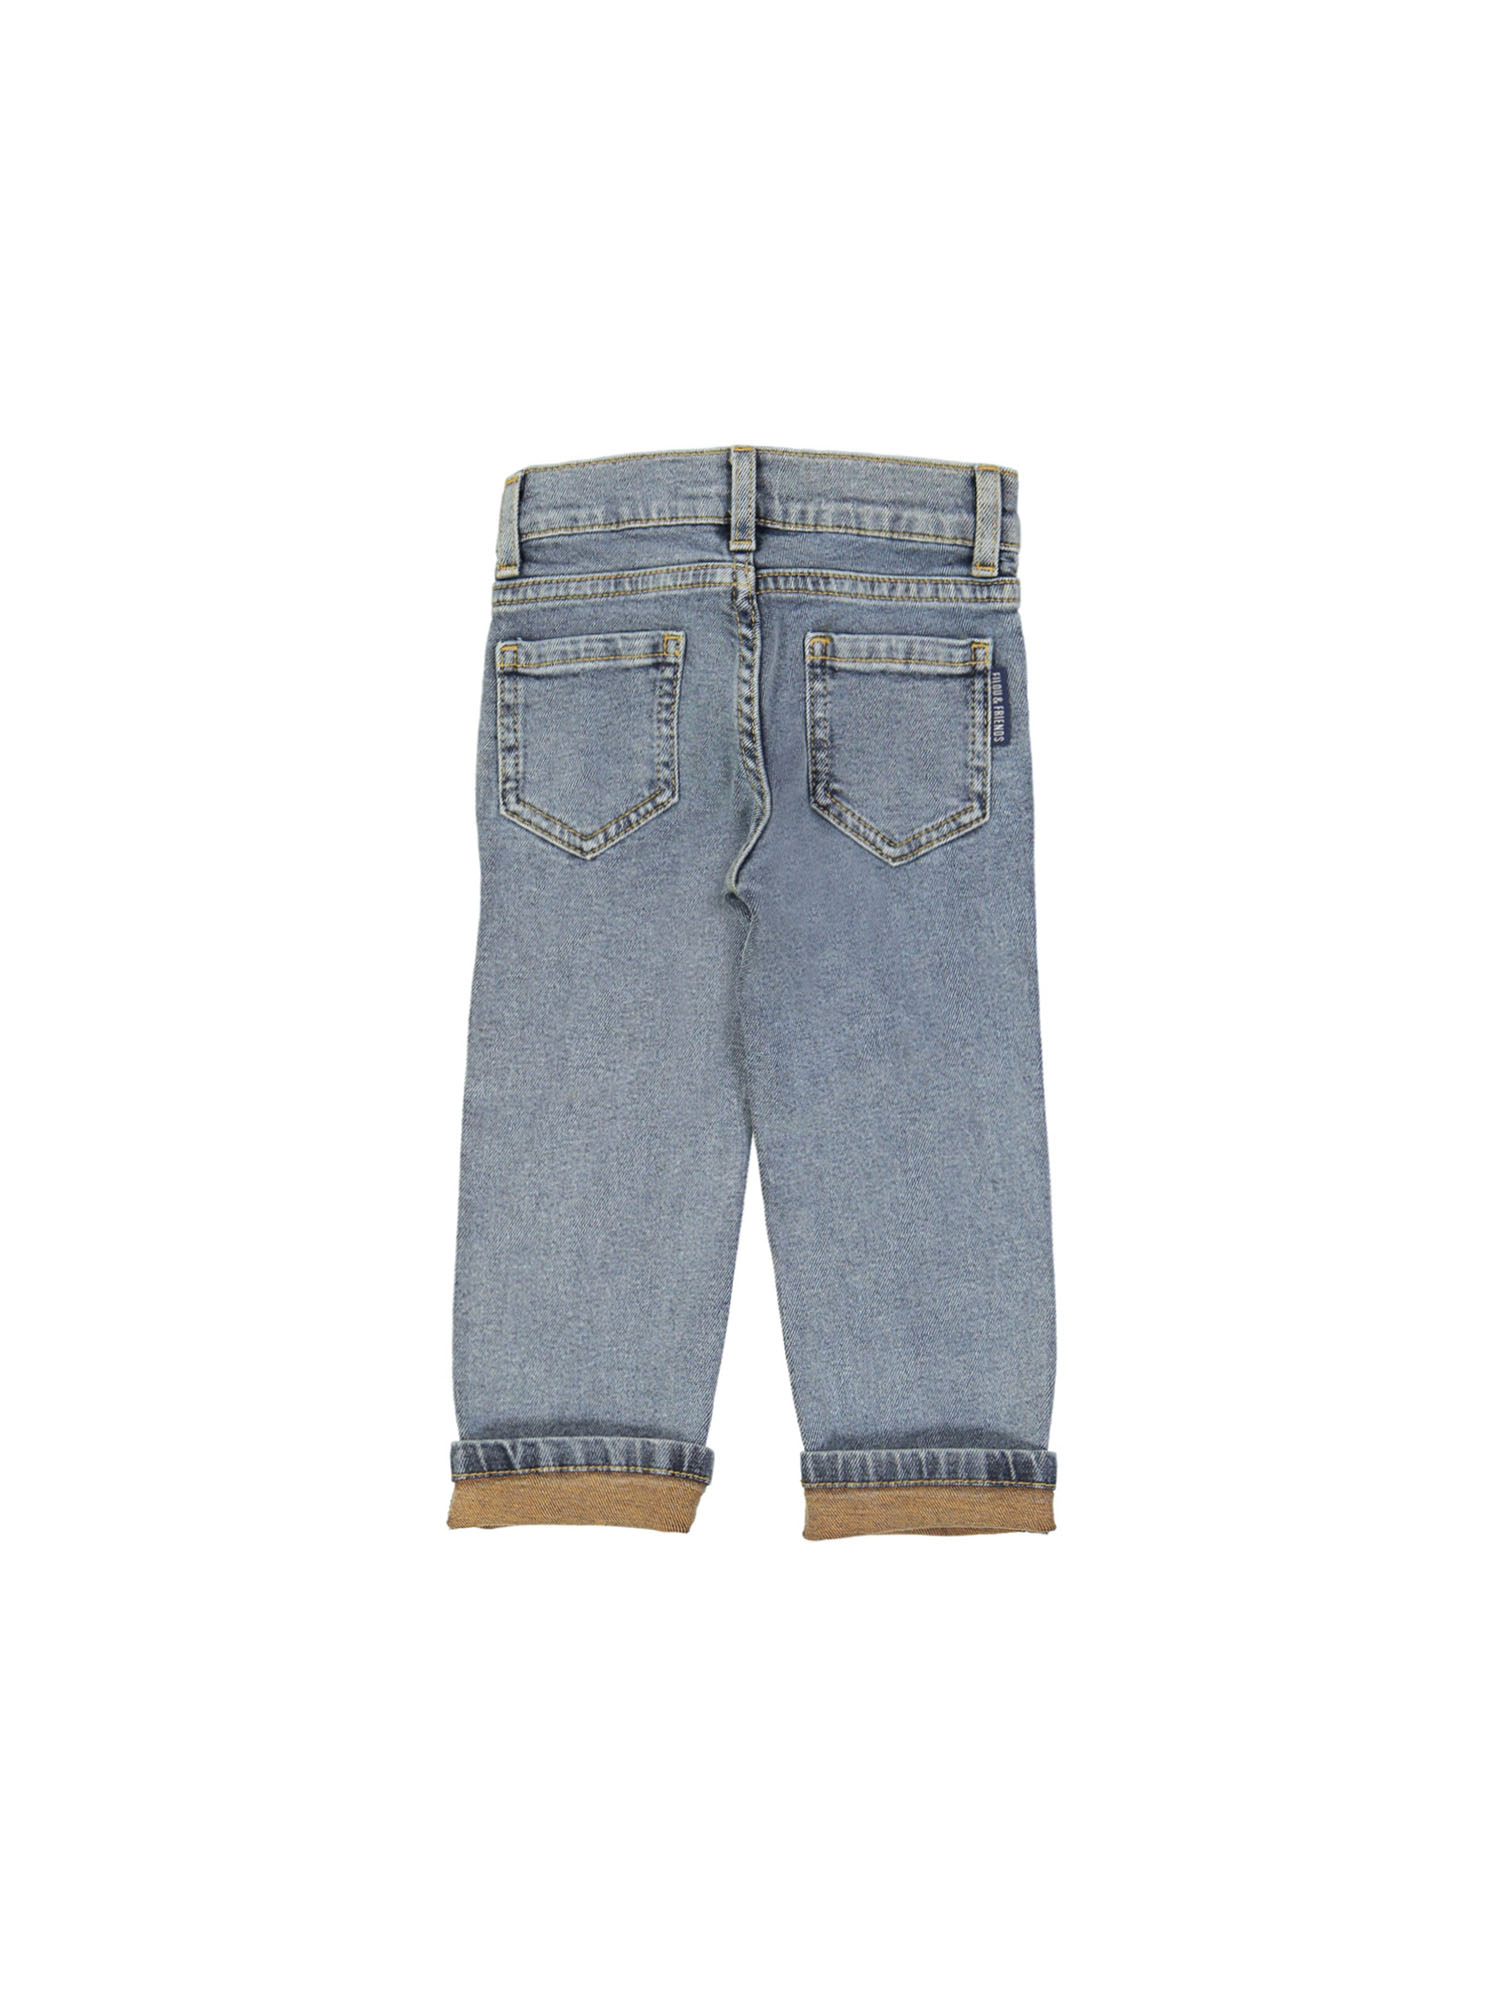 jeans regular zipper rust